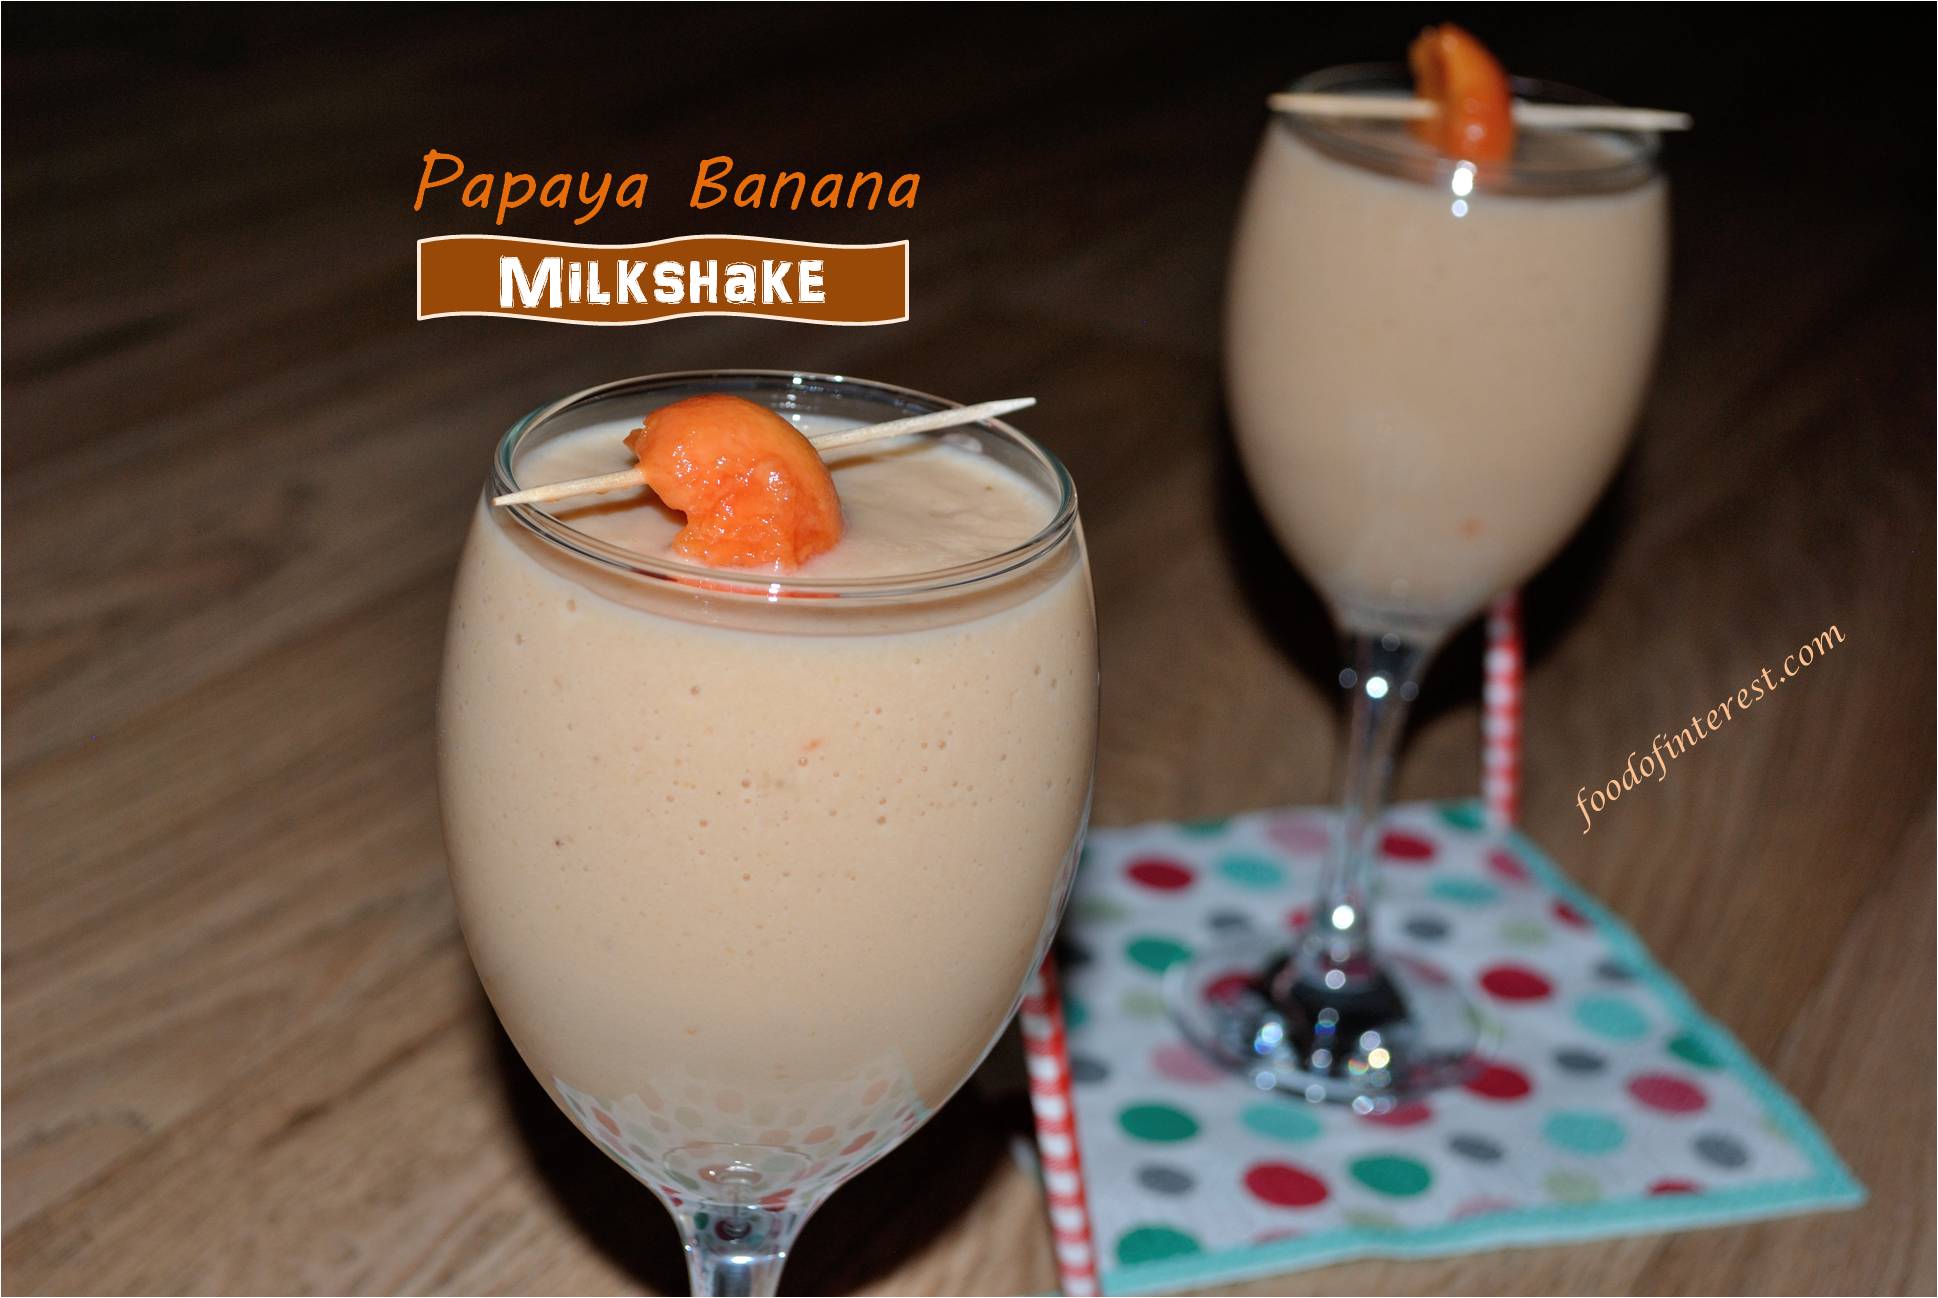 Papaya Banana Milkshake | Milkshake Recipes – Food Of Interest